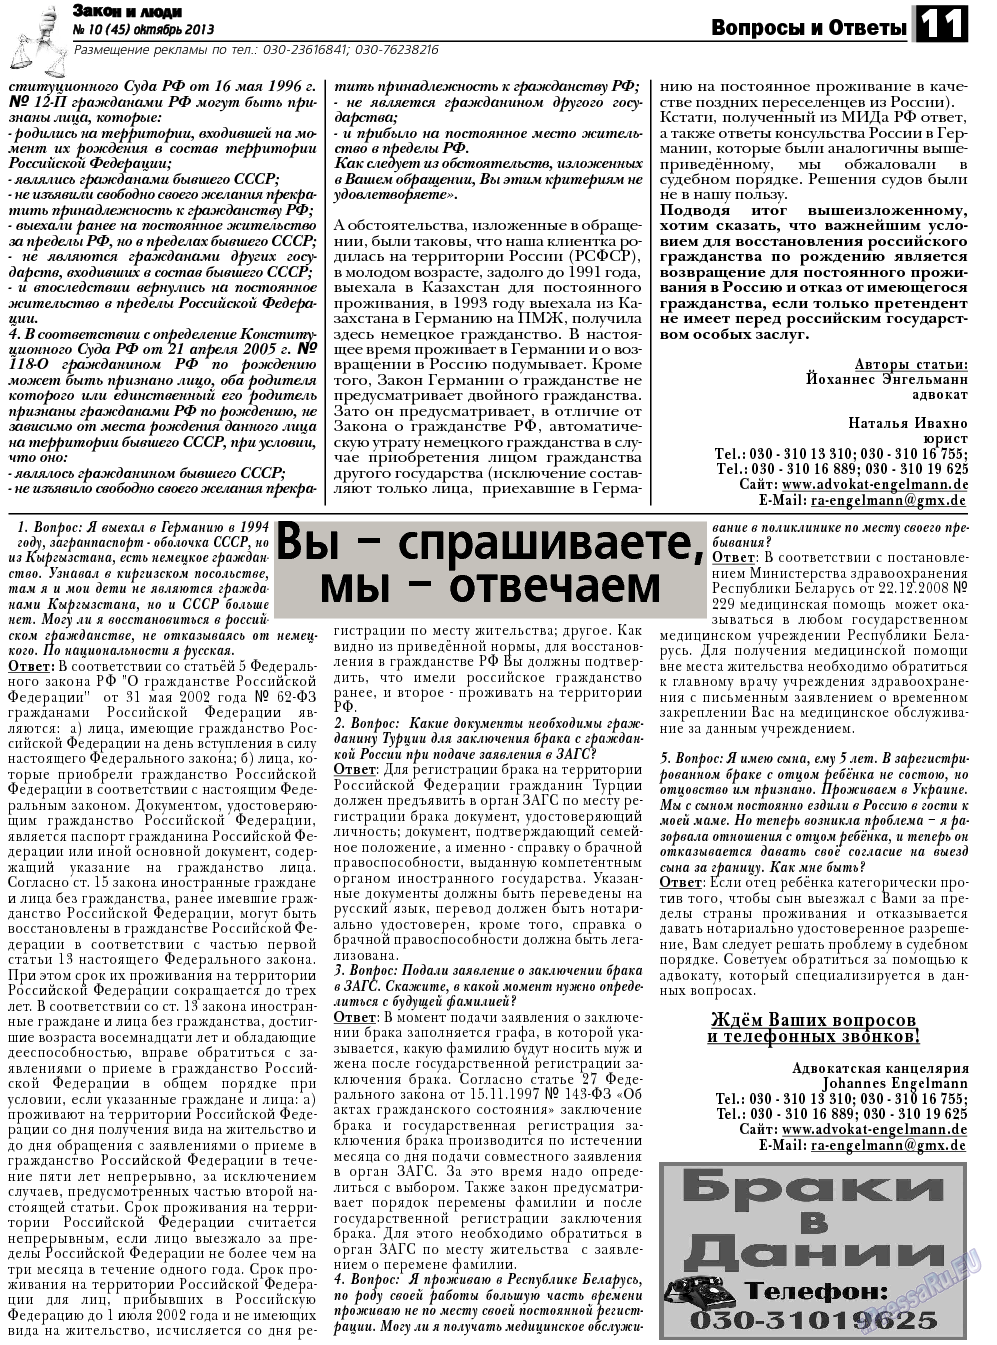 Закон и люди, газета. 2013 №10 стр.11